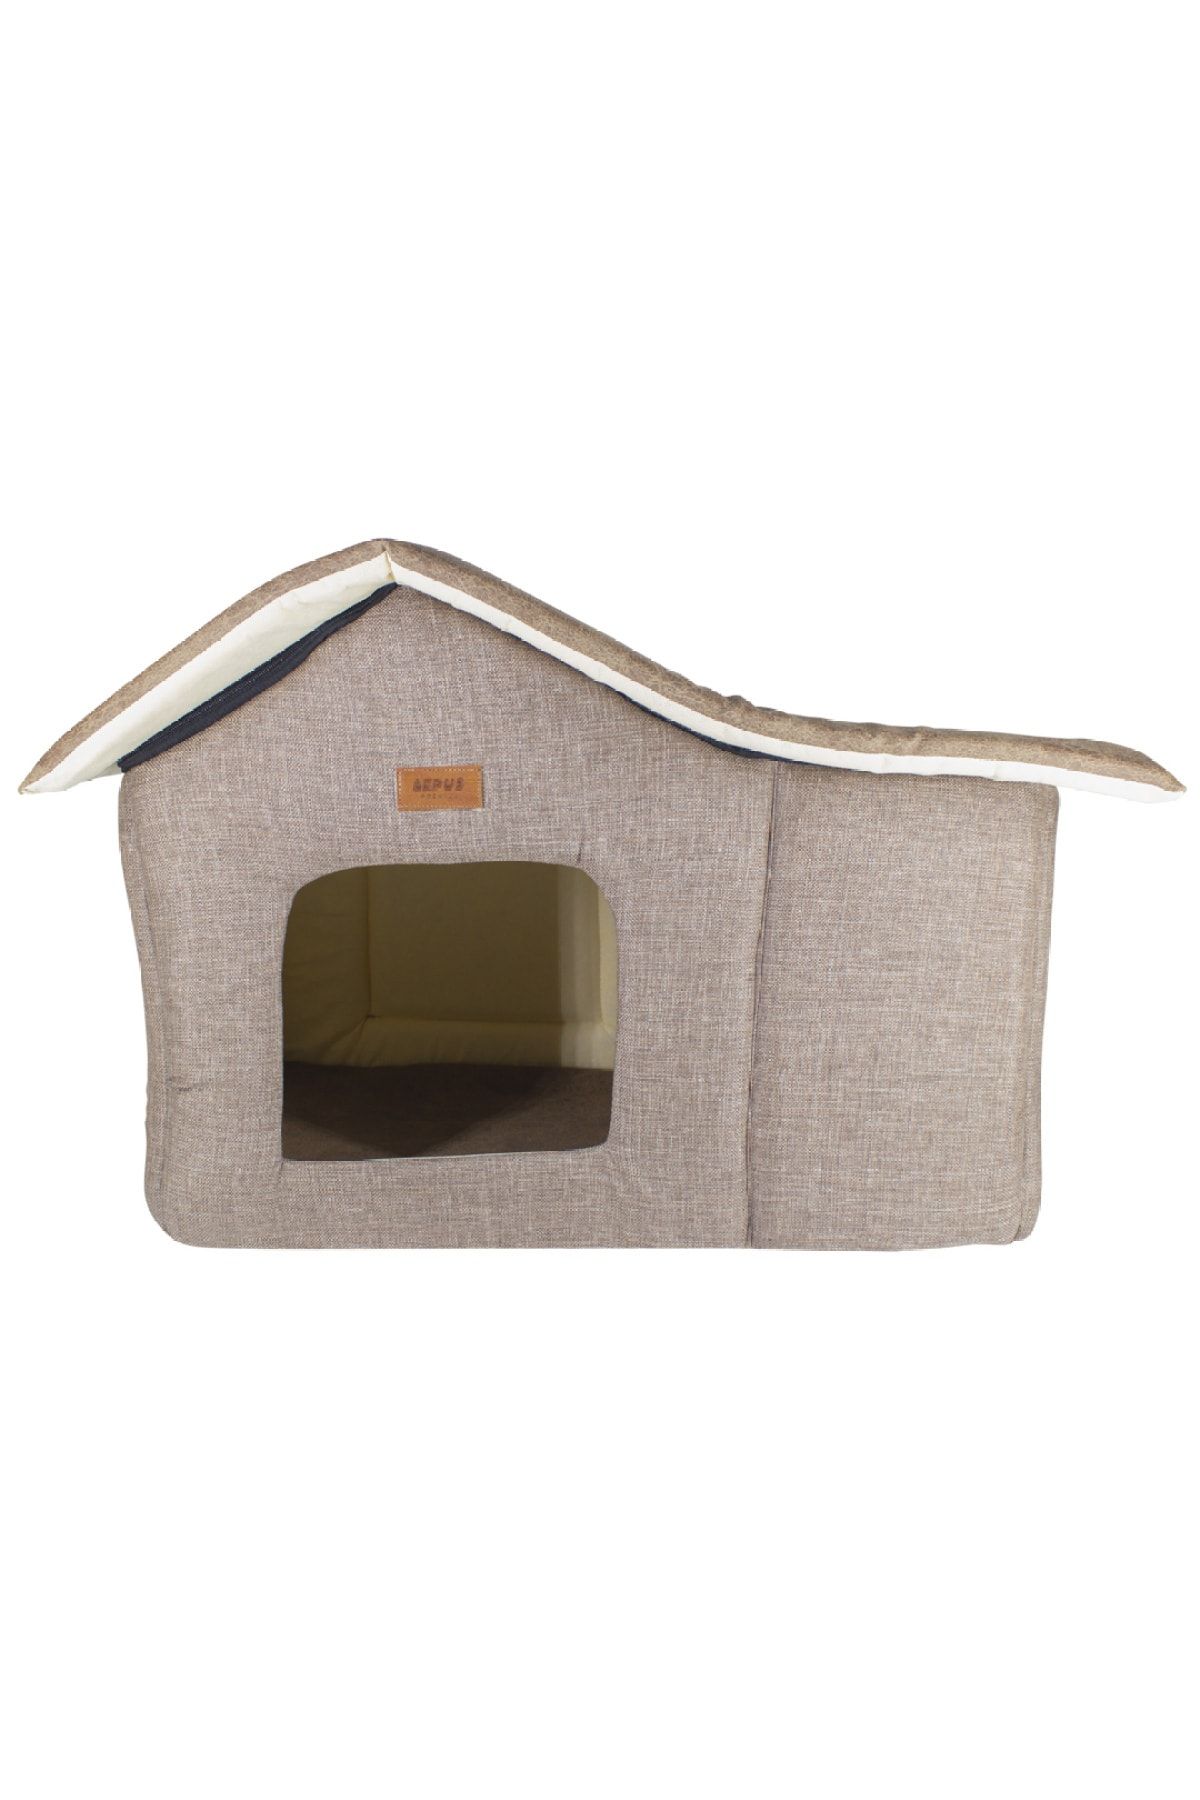 Lepus Kedi Ve Köpek Yatağı ( Cabin Yatak)